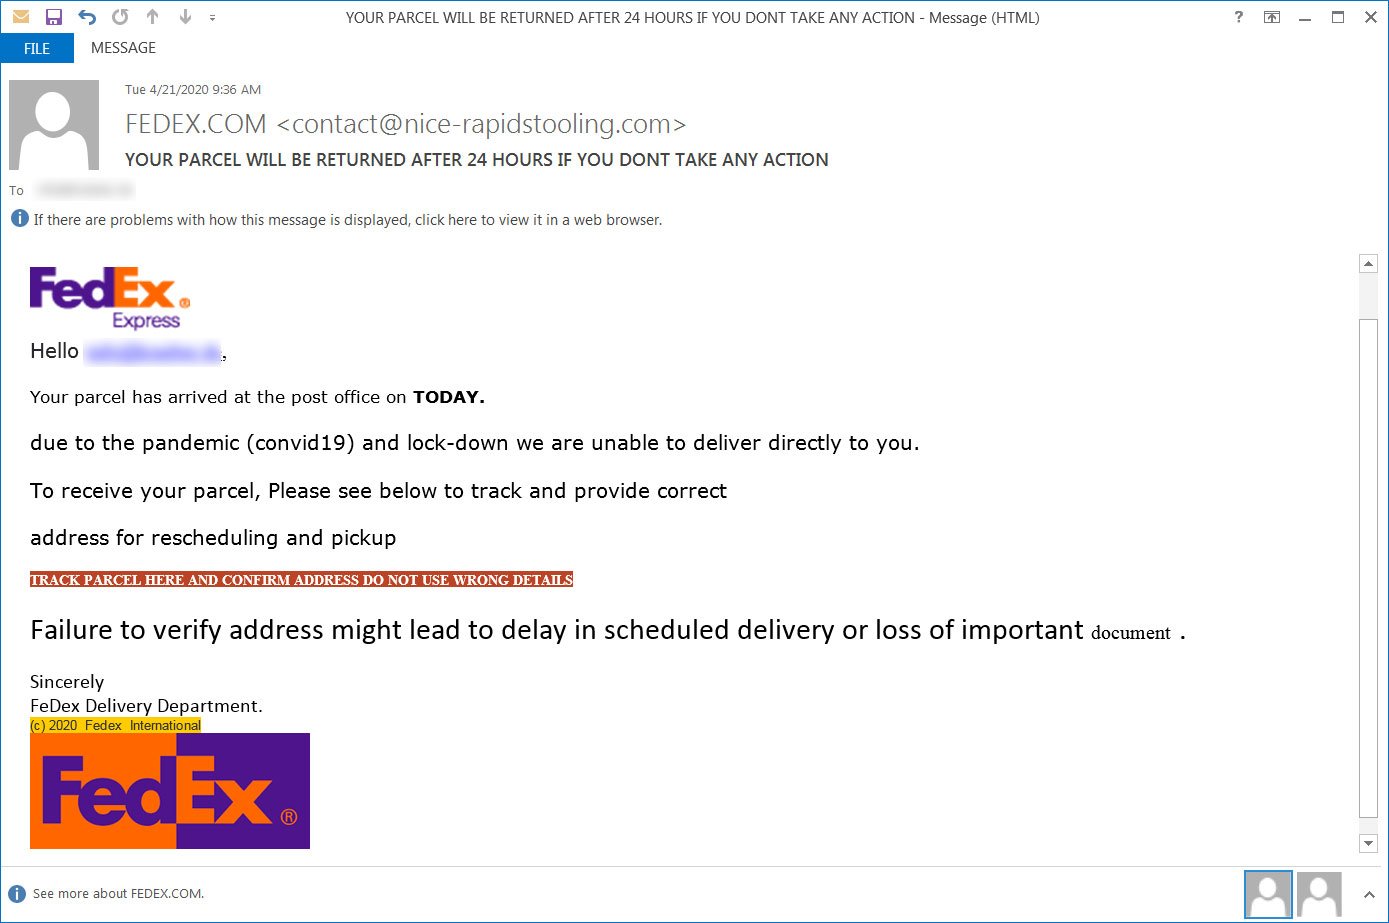 FedEx phishing scam